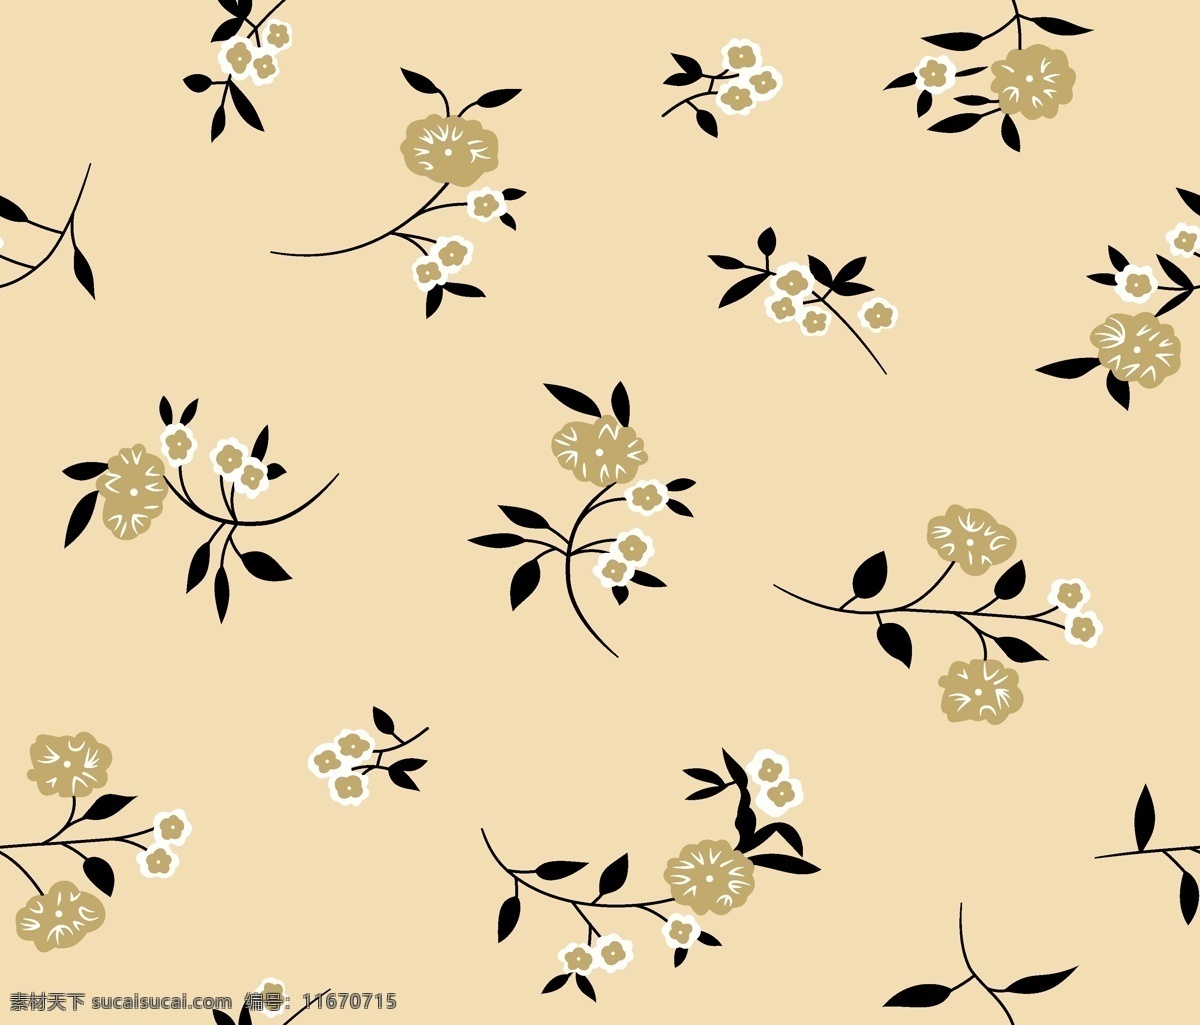 面料设计 墙纸设计 服装面料 花卉 植物 叶子 底纹 花边花纹 底纹边框